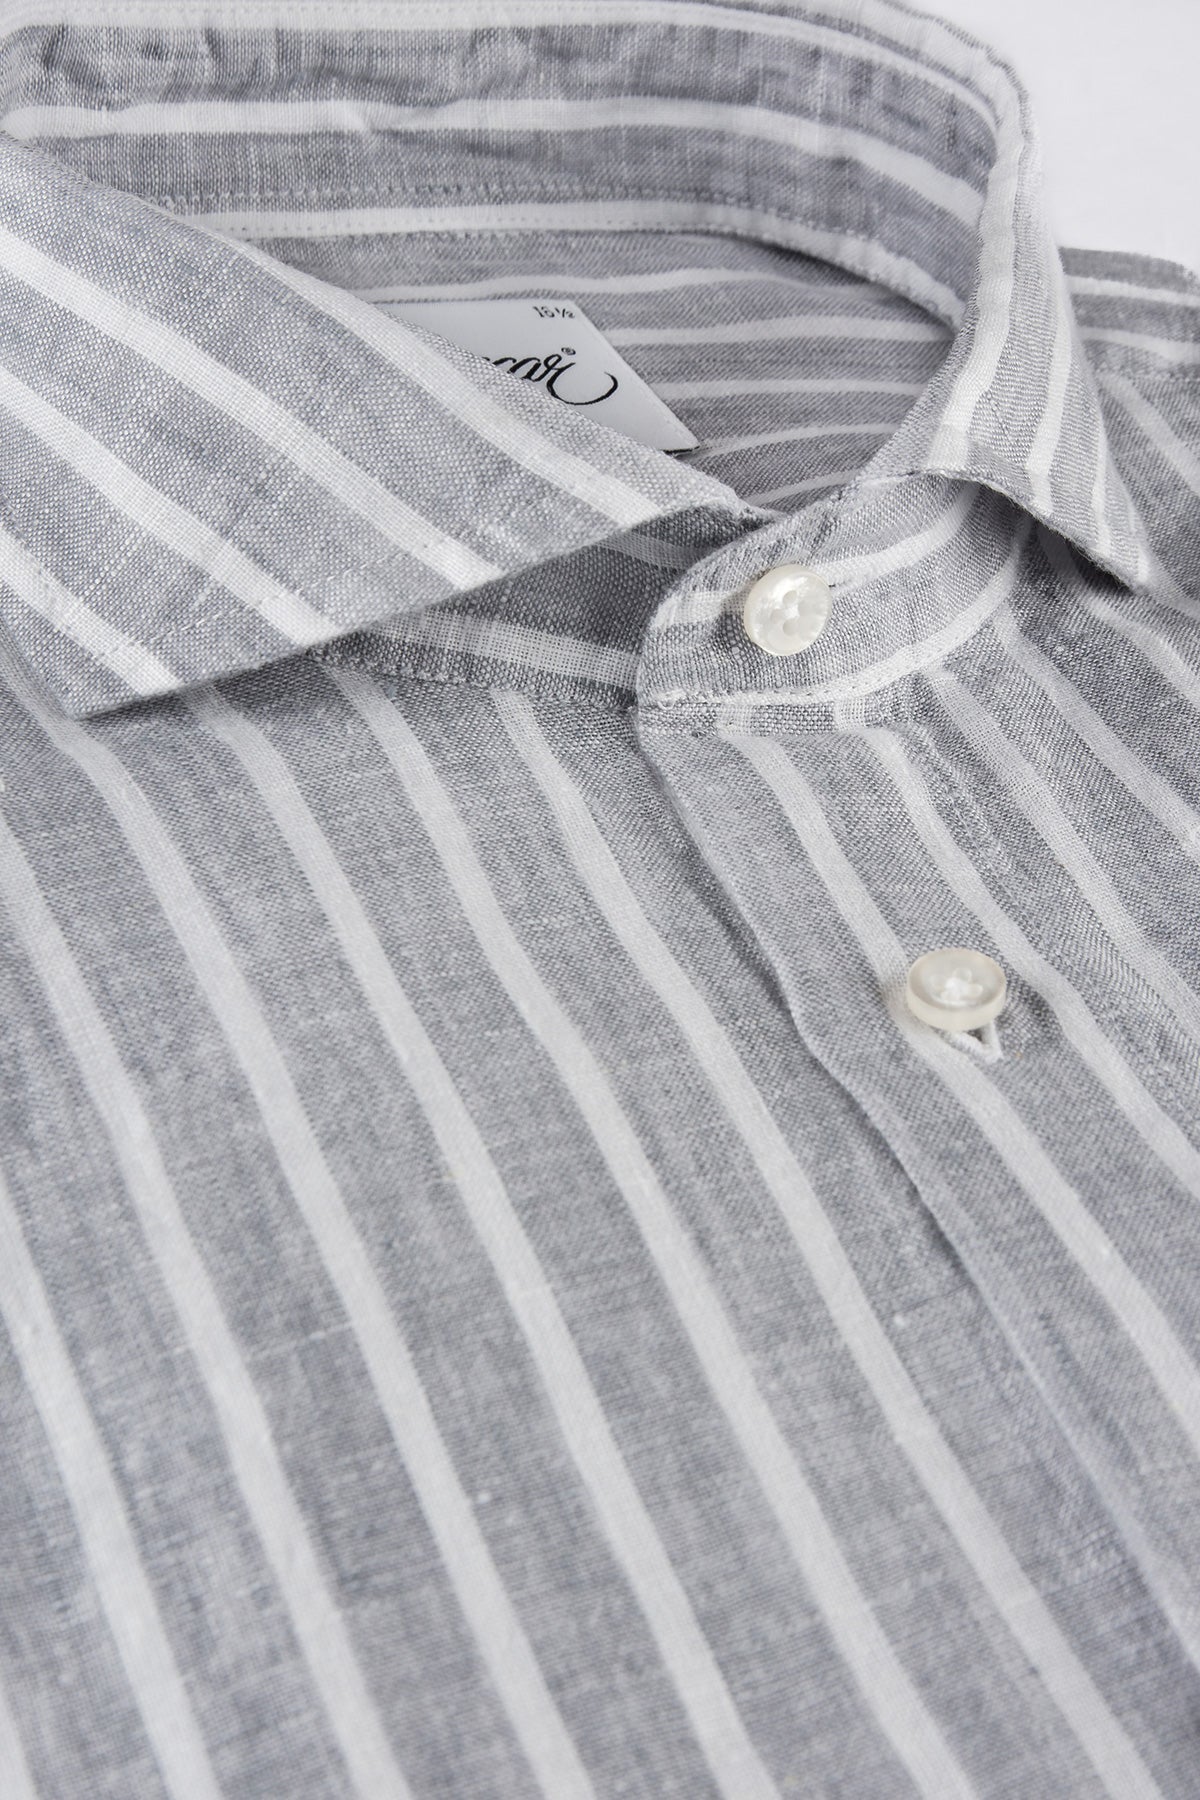 Grey striped linen regular fit shirt